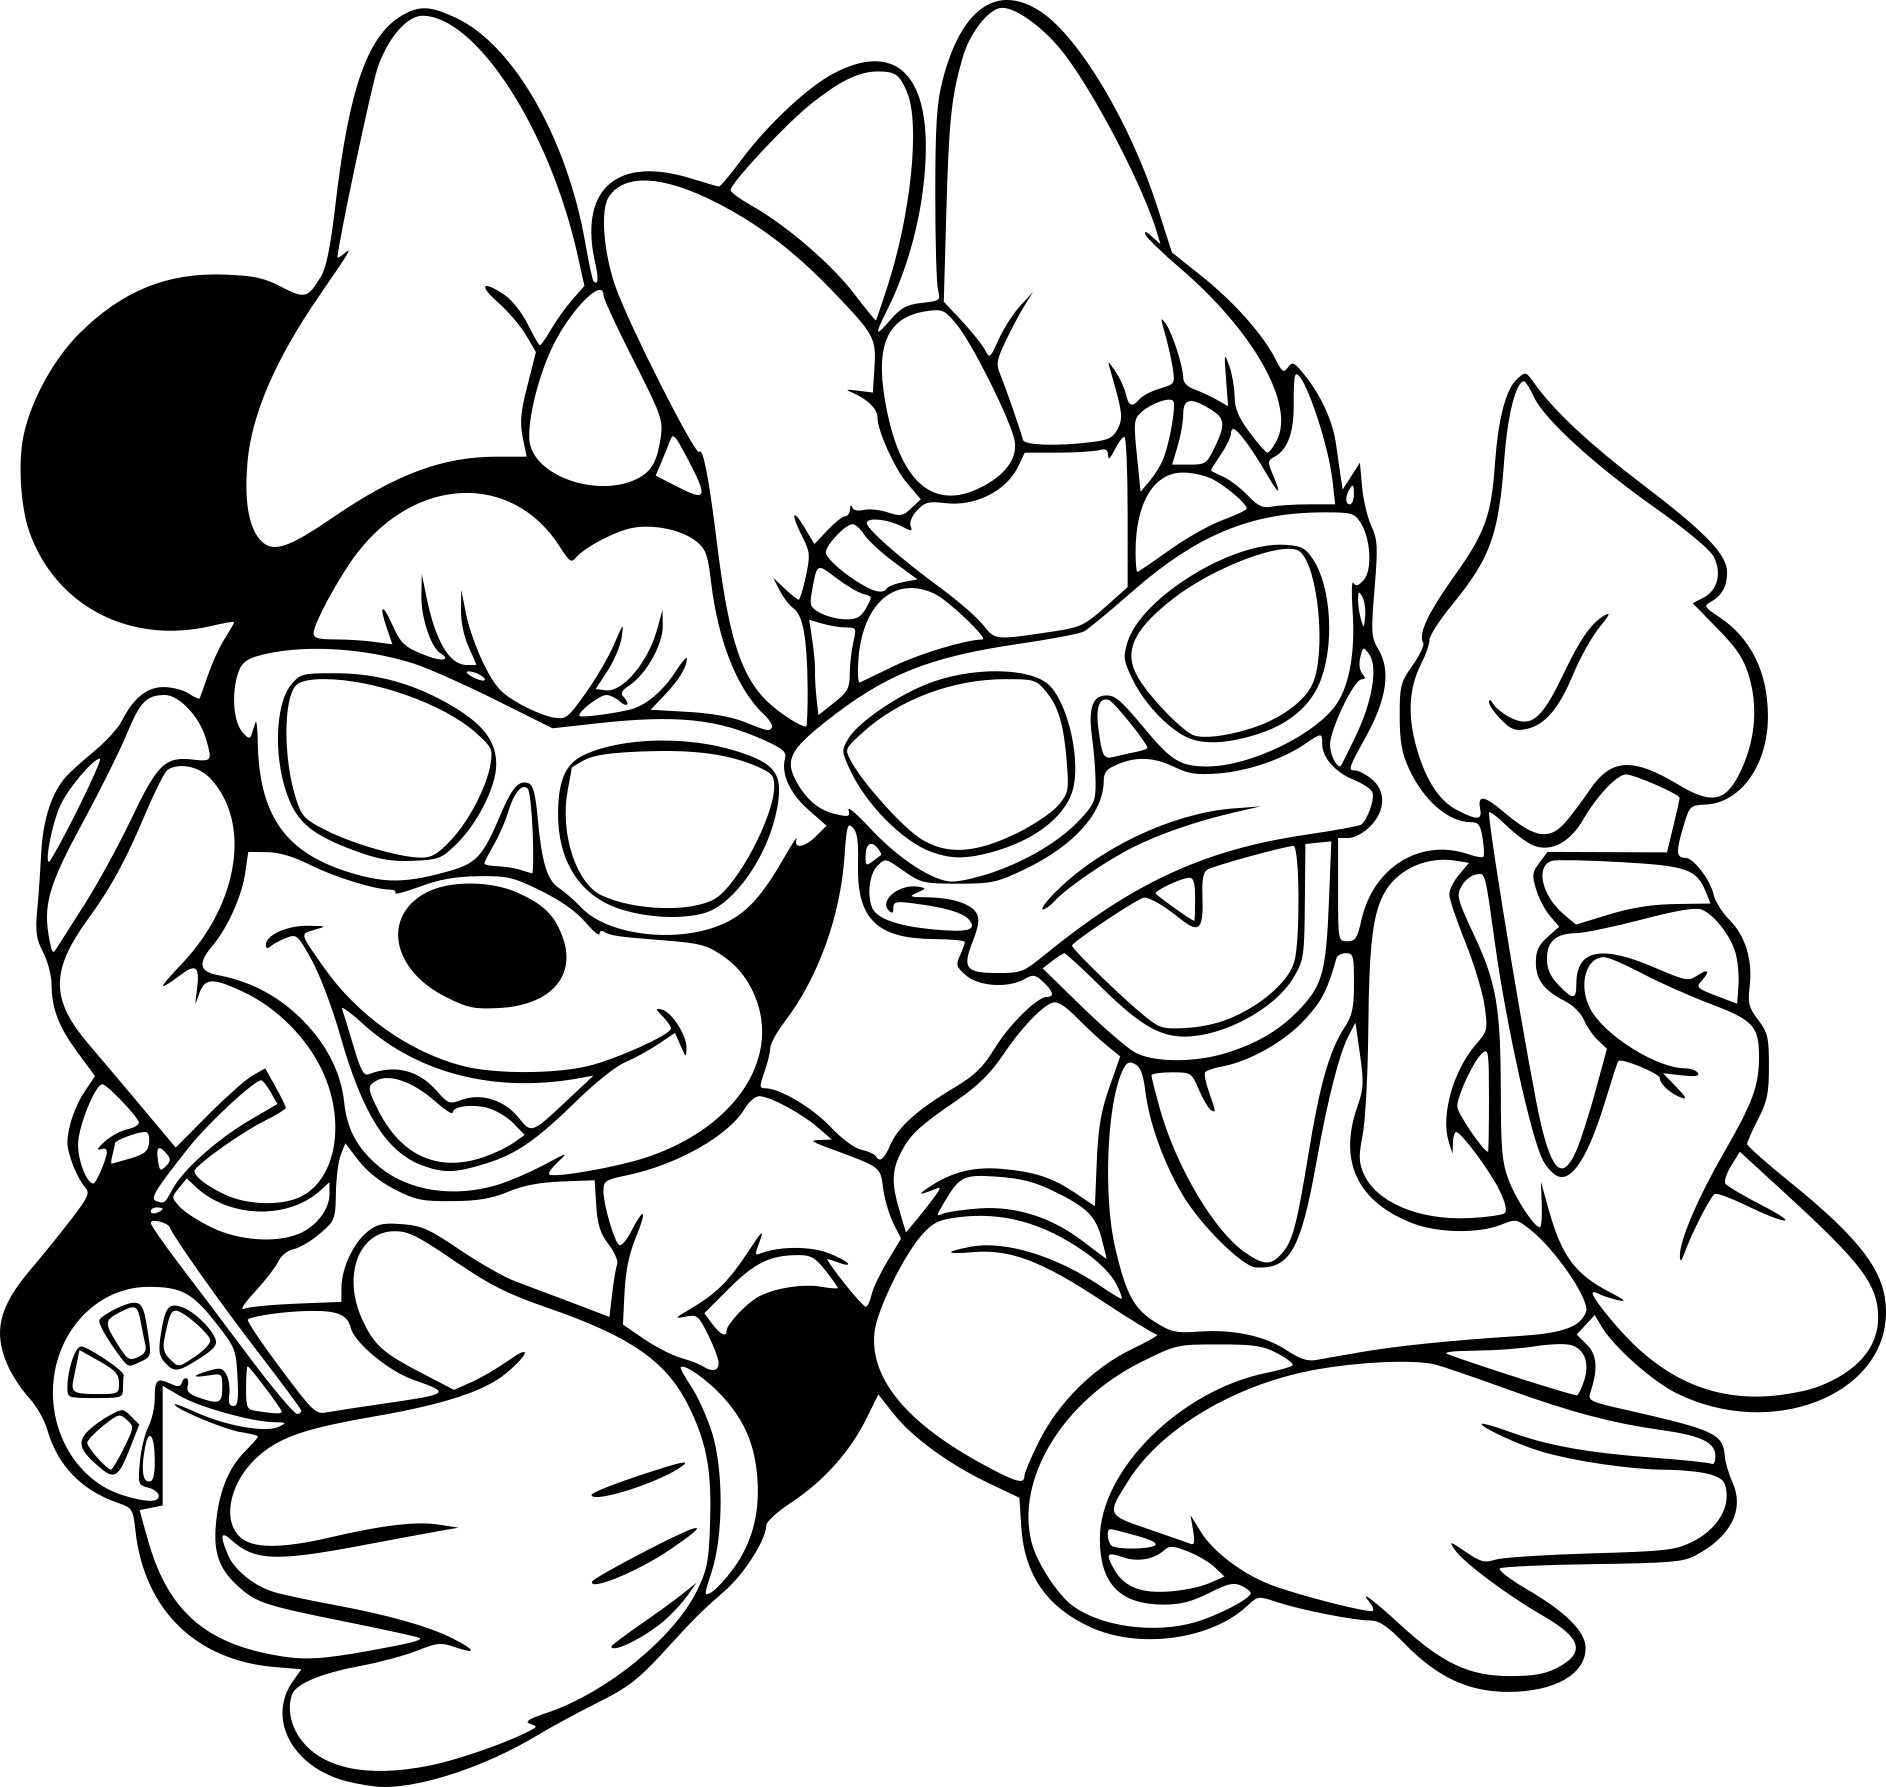 Coloriage Minnie Mouse Et Daisy Duck À Imprimer Sur à Coloriage Minnie